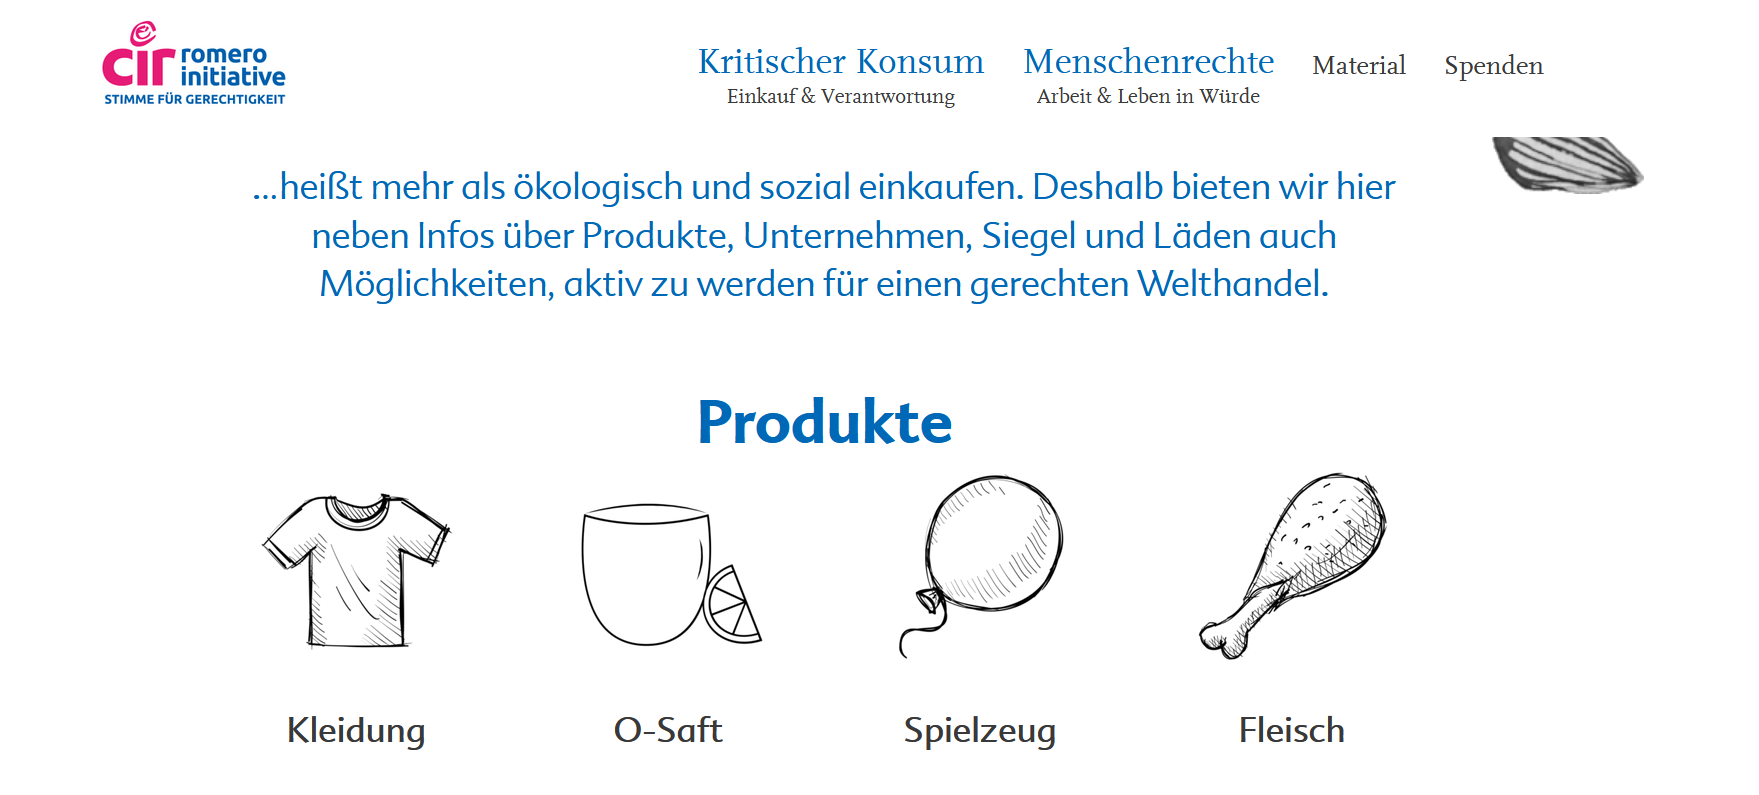 Ausschnitt der Website zu kritischem Konsum. Verschiedene Produkte werden illustrativ dargestellt. Quelle: ci-romero.de/kritischer-konsum